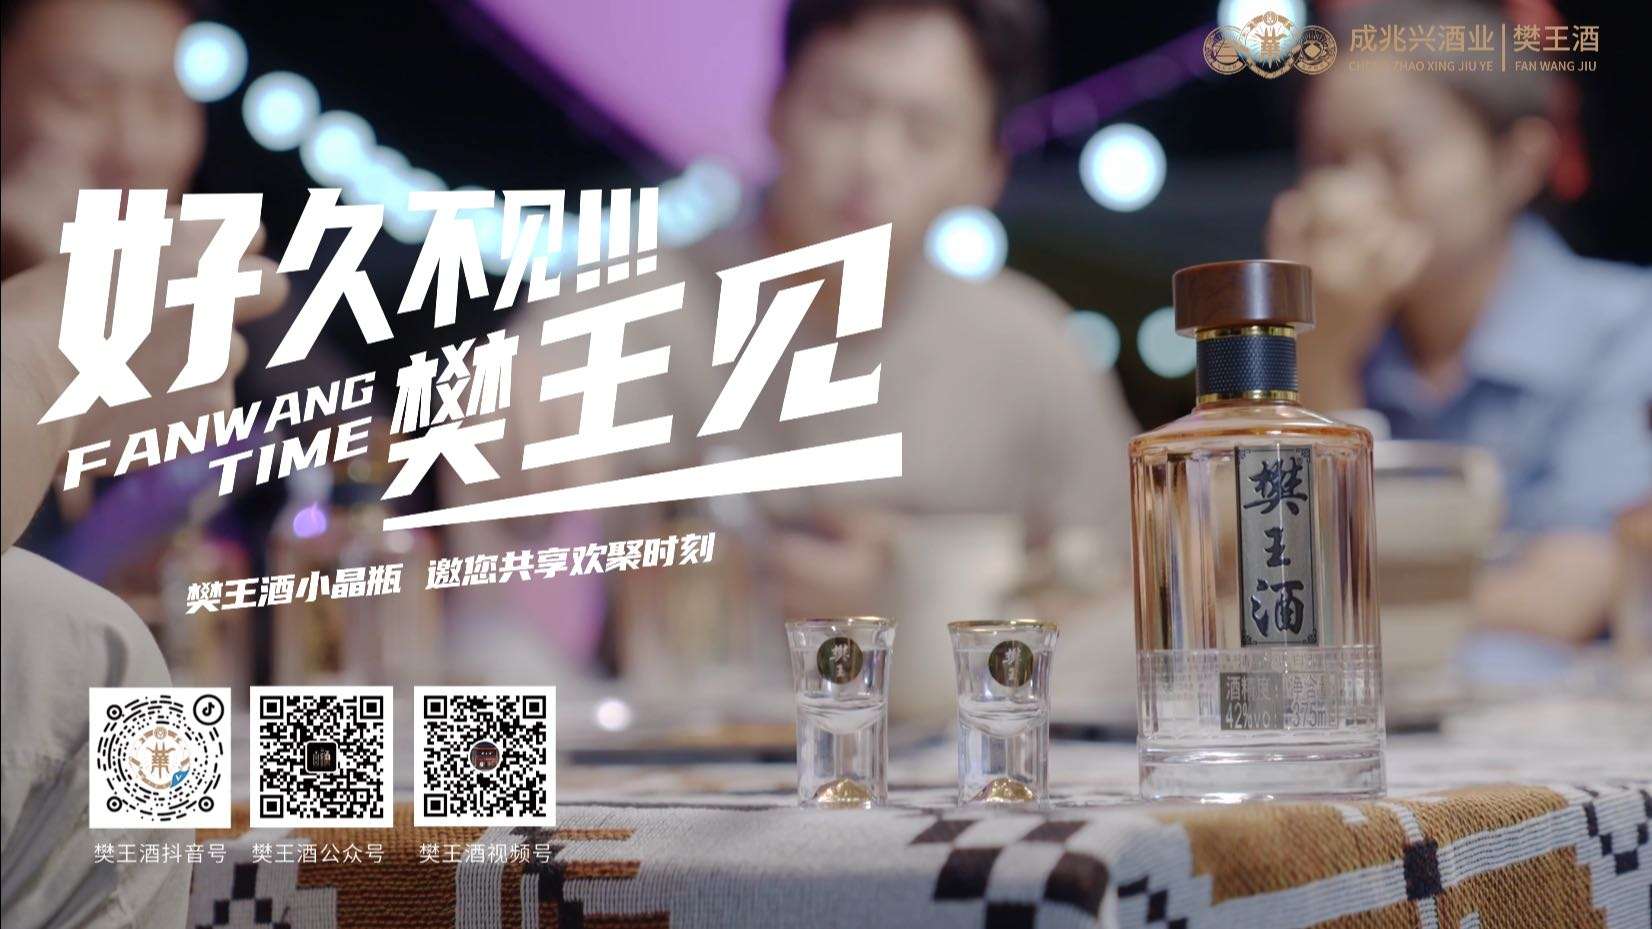 樊王酒小晶瓶系列广告